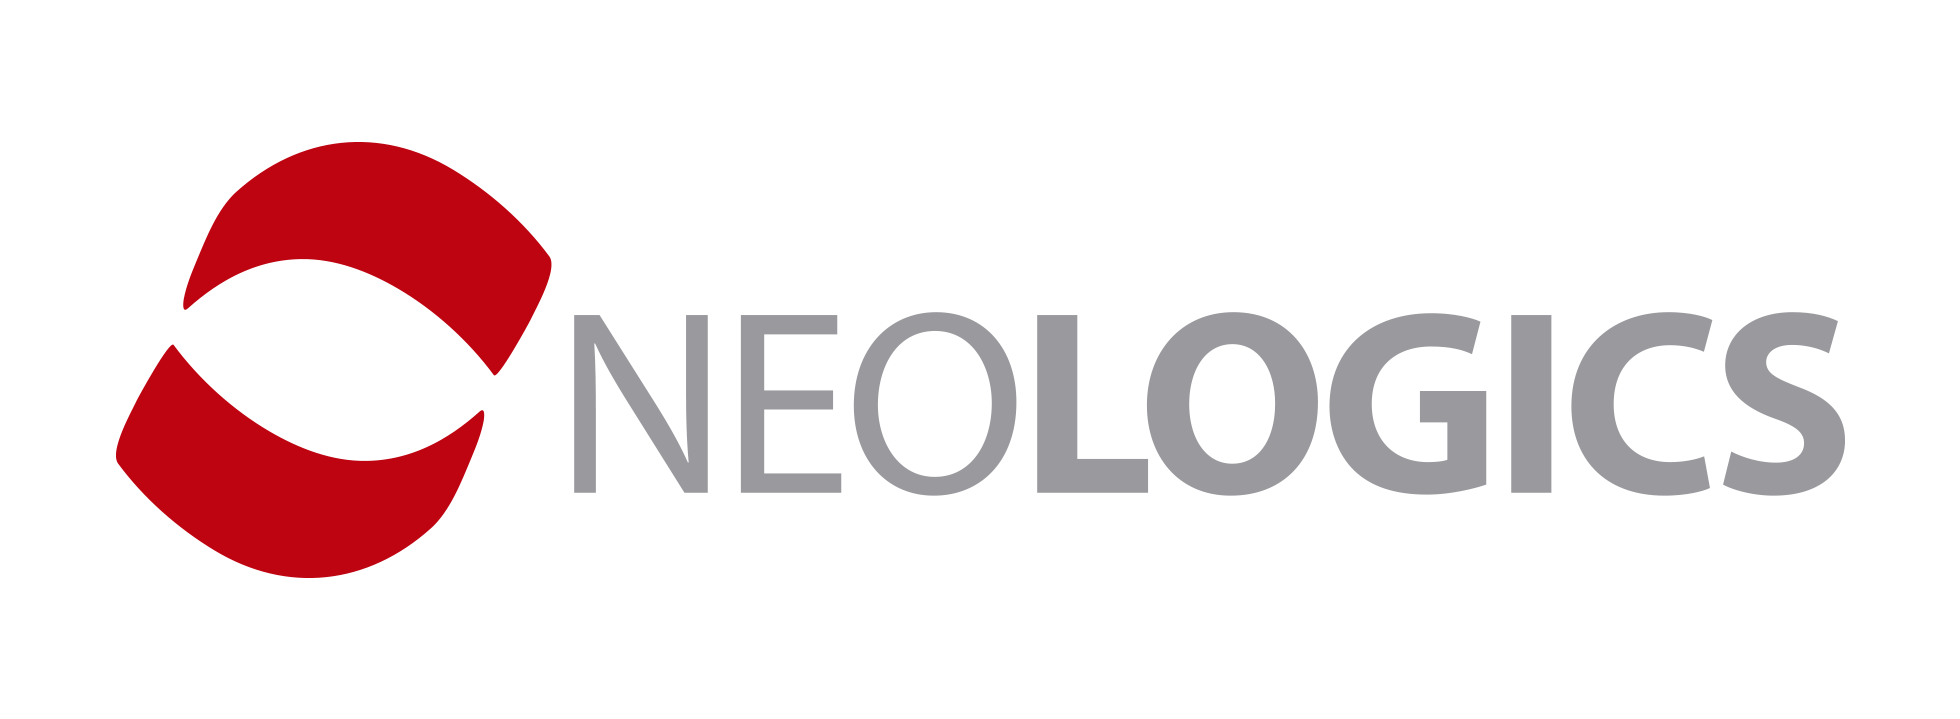 Neologics